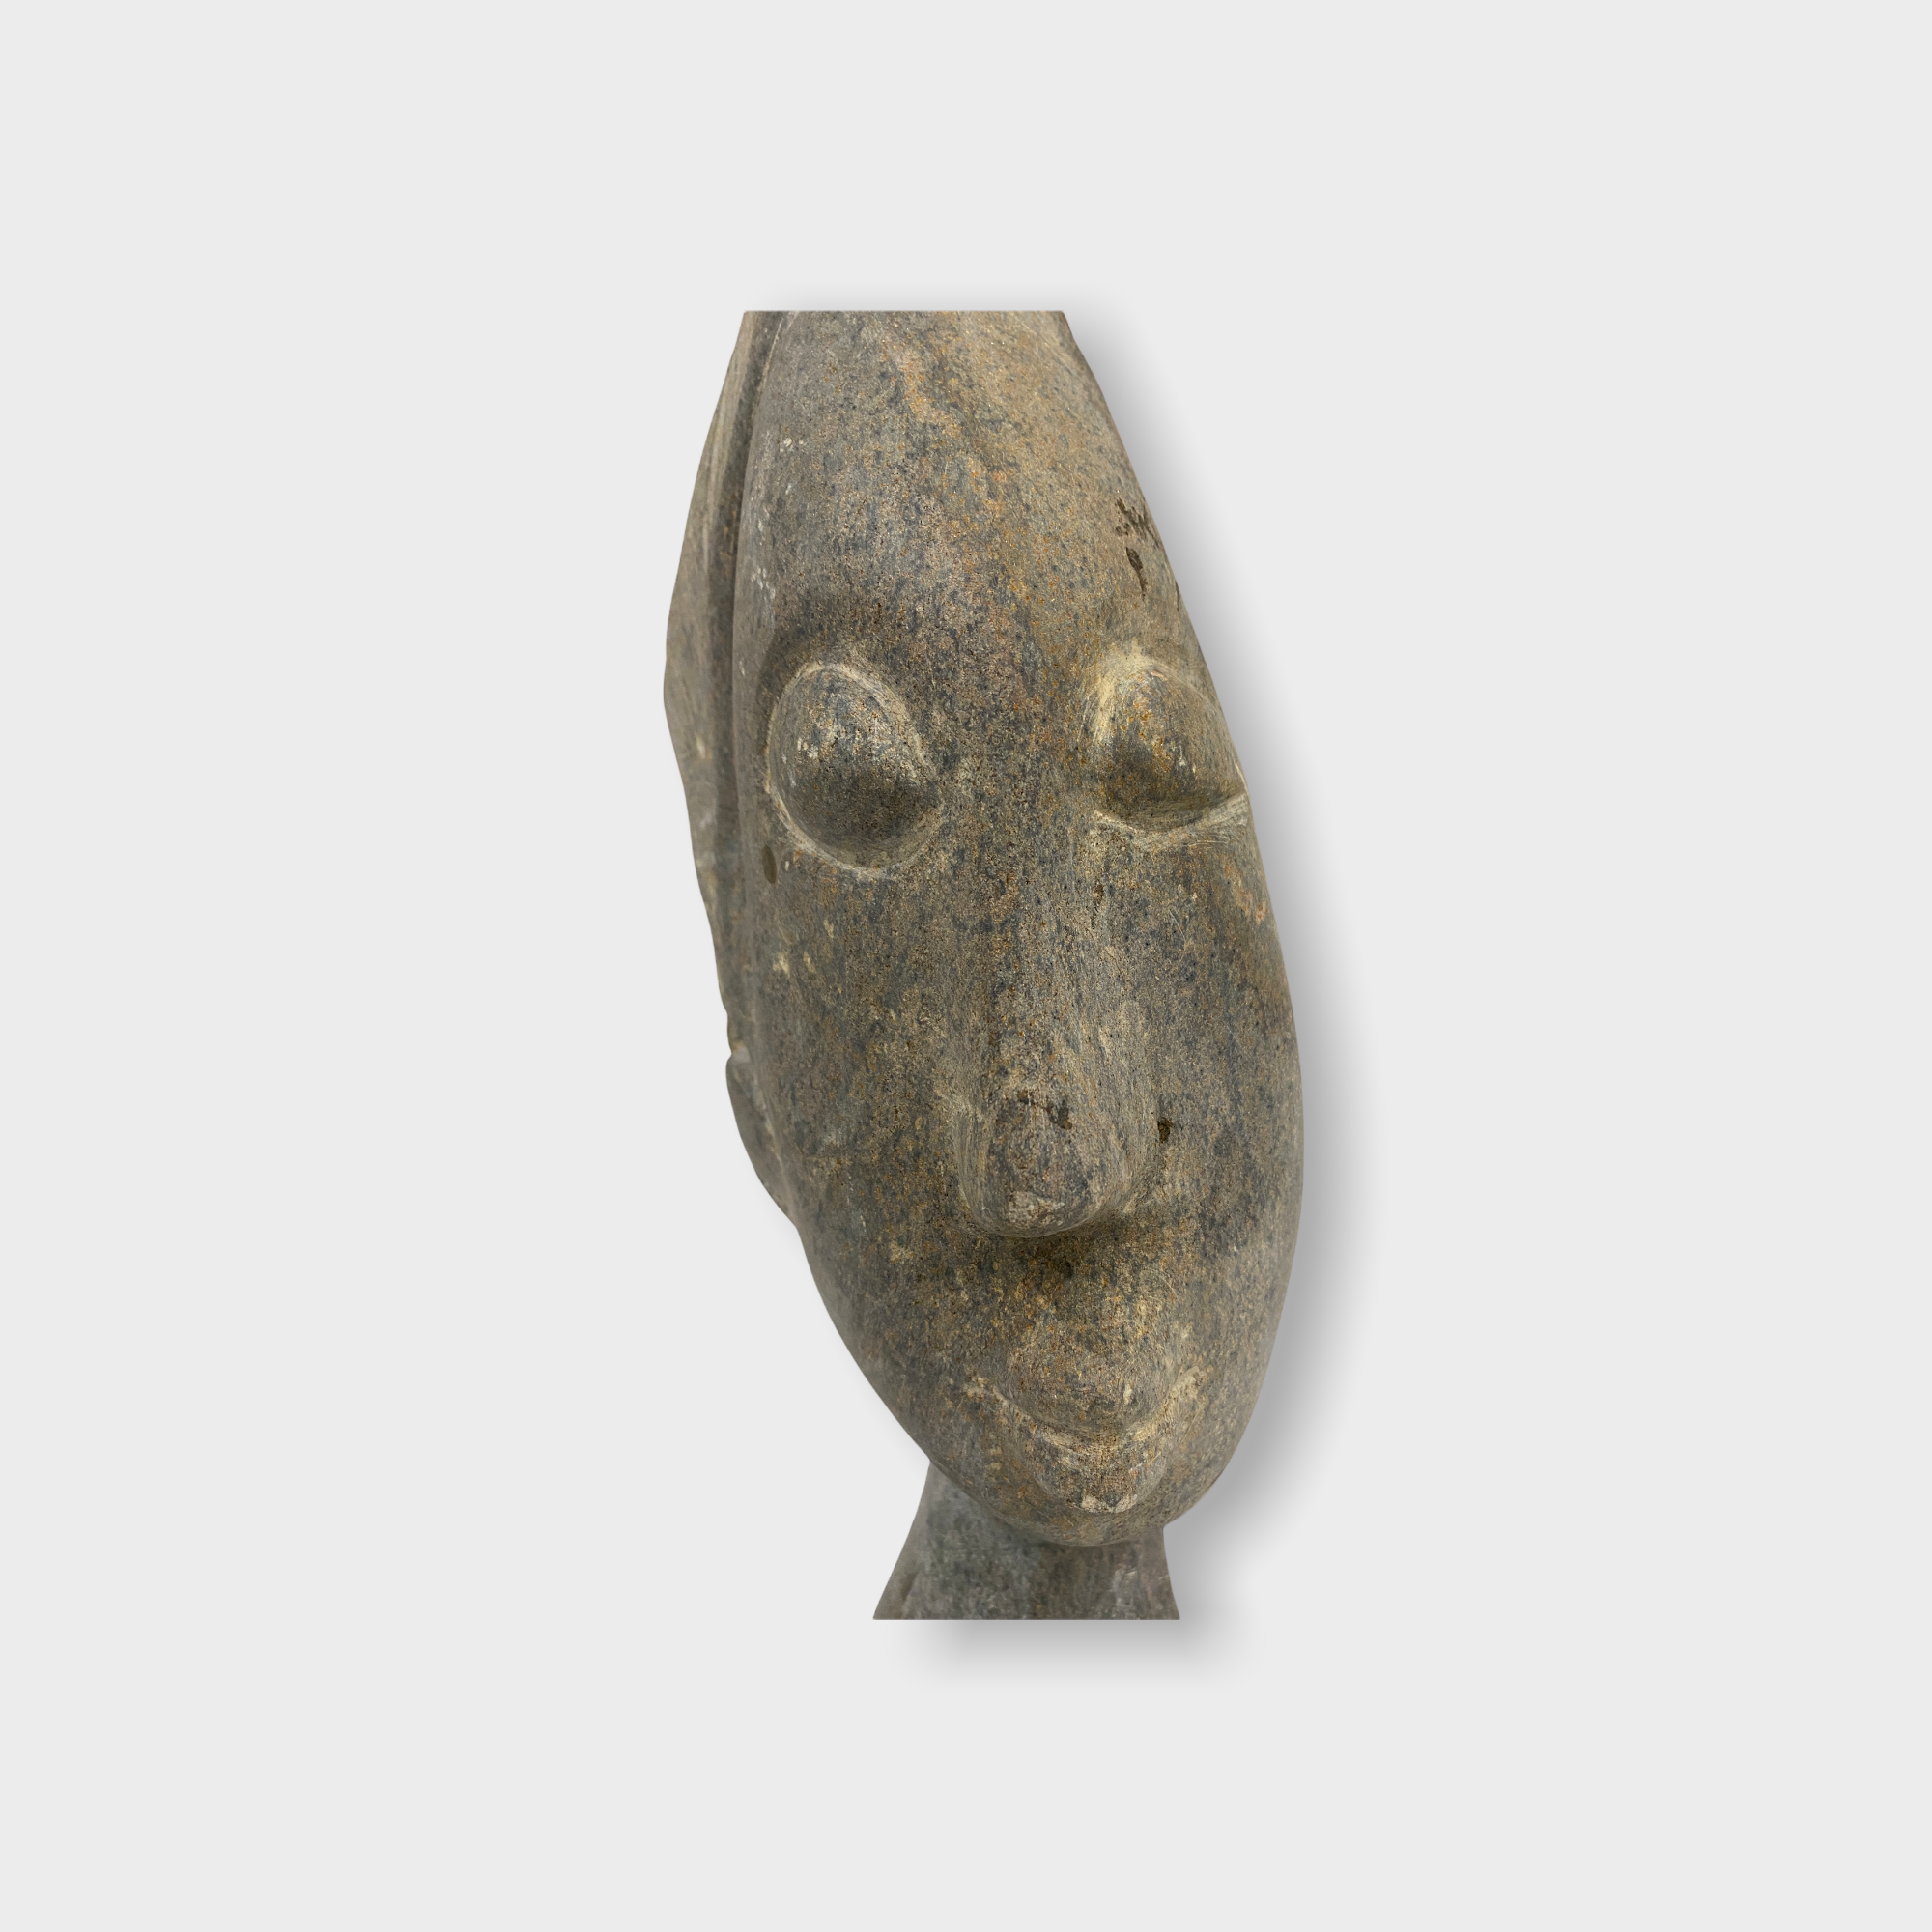 Stone head sculpture by Rizimu Chiwawa Zimbabwe (3110)